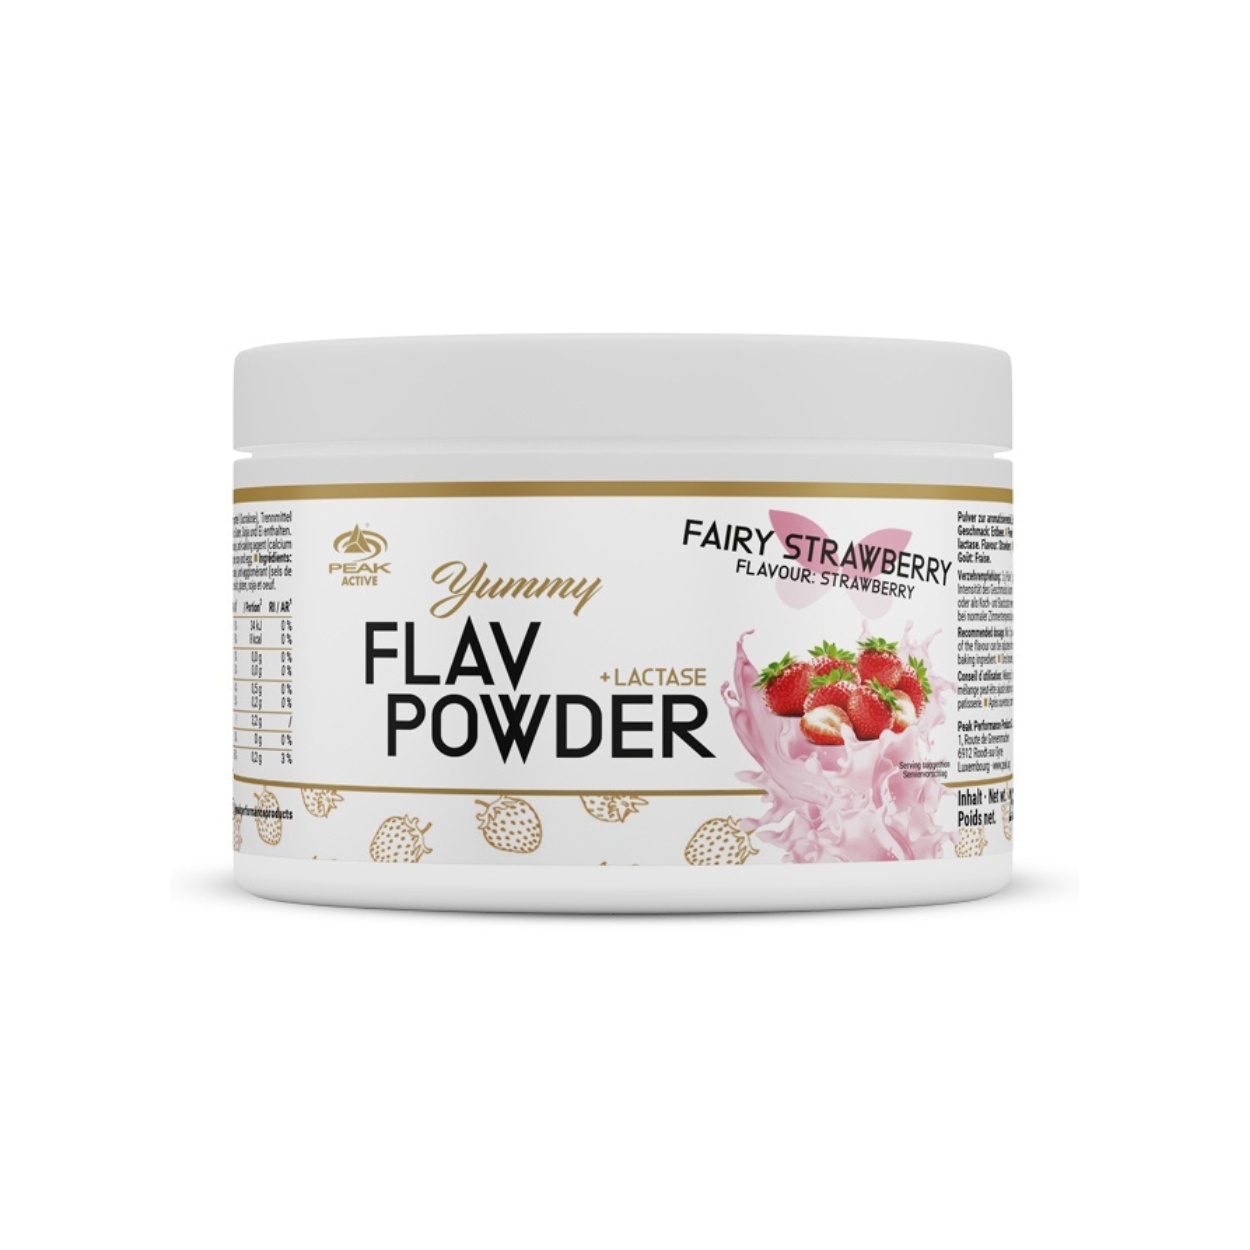 Peak Yummy Flav Powder Fairy Strawberry (250g Dose)